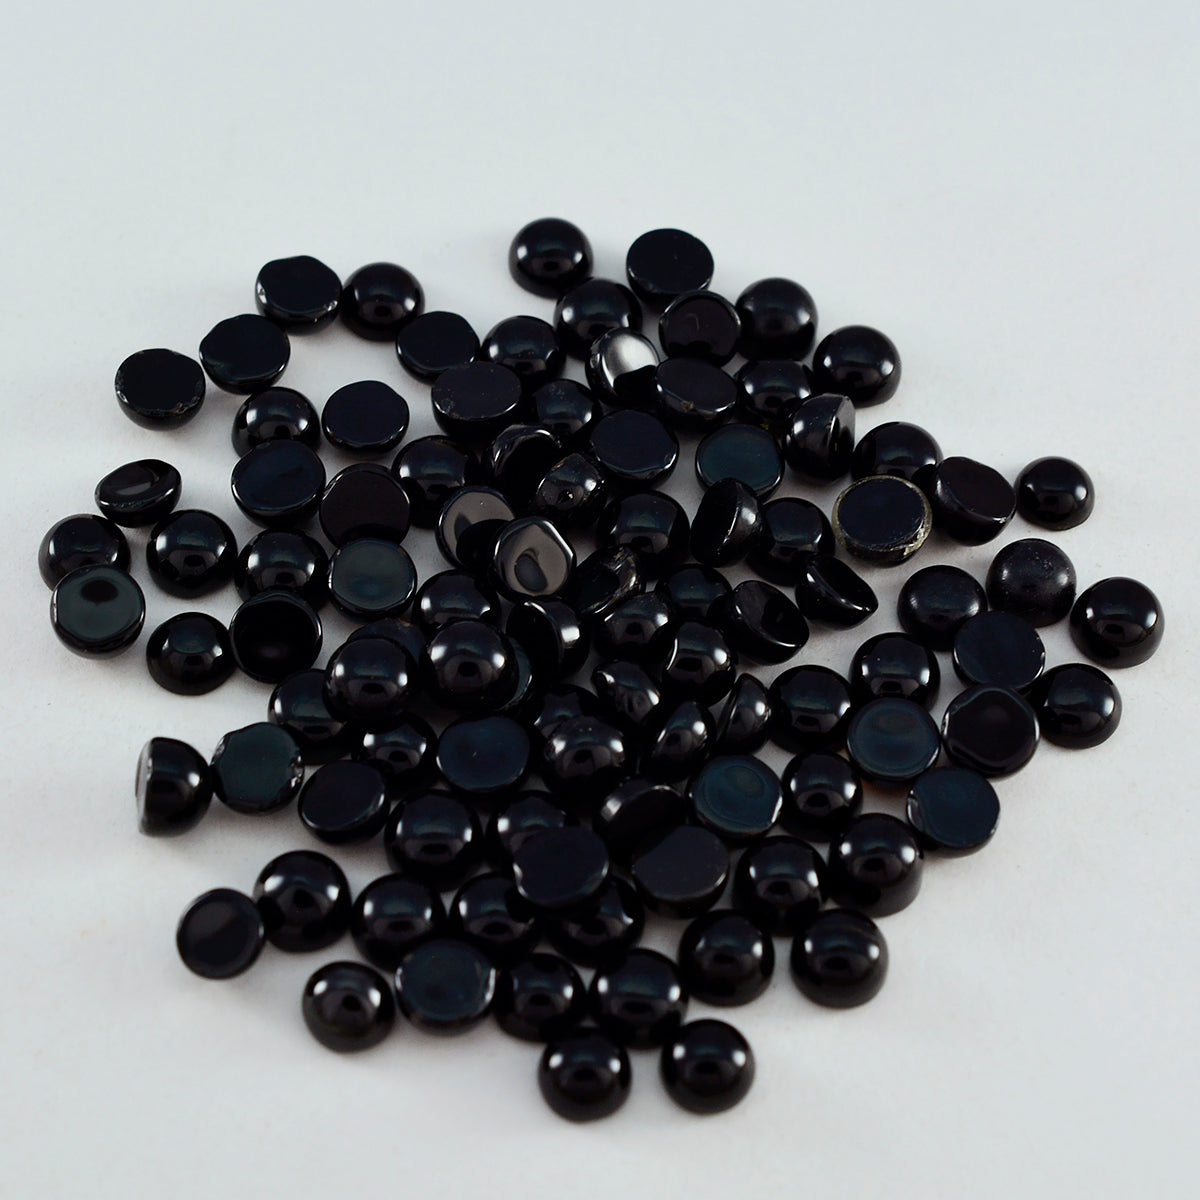 Riyogems 1PC Black Onyx Cabochon 4x4 mm Round Shape A+ Quality Loose Gems